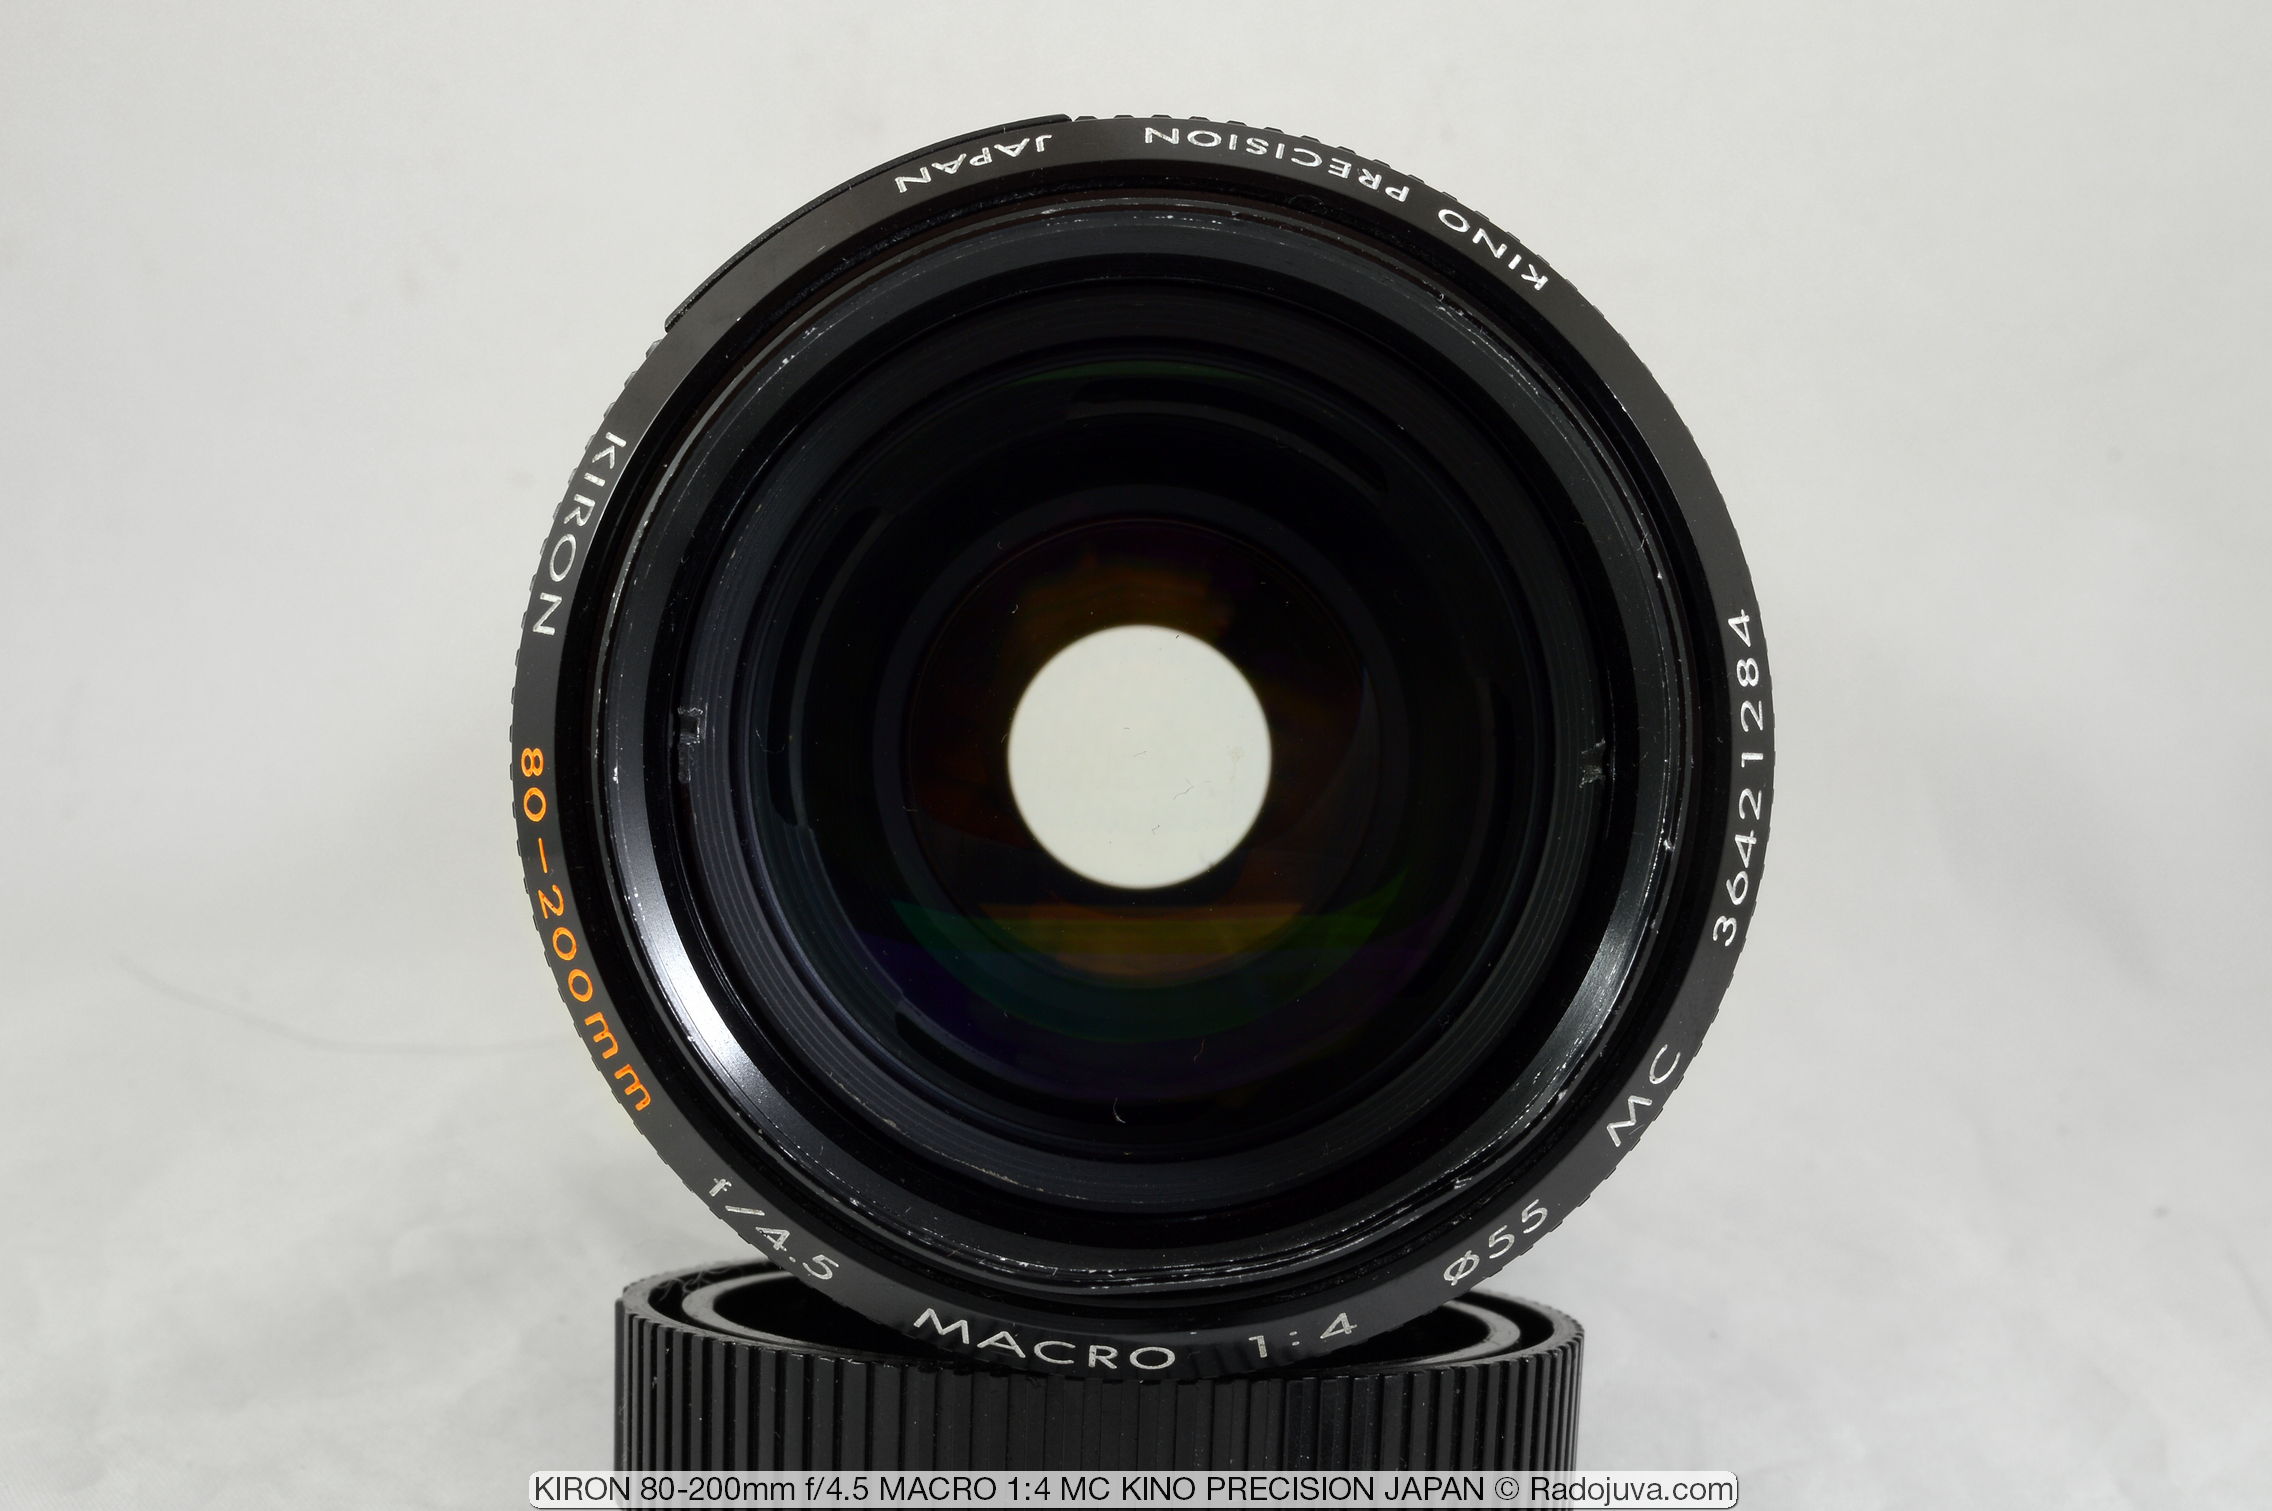 KIRON 80-200mm f4.5 MACRO 1:4 MC KINO PRECISION